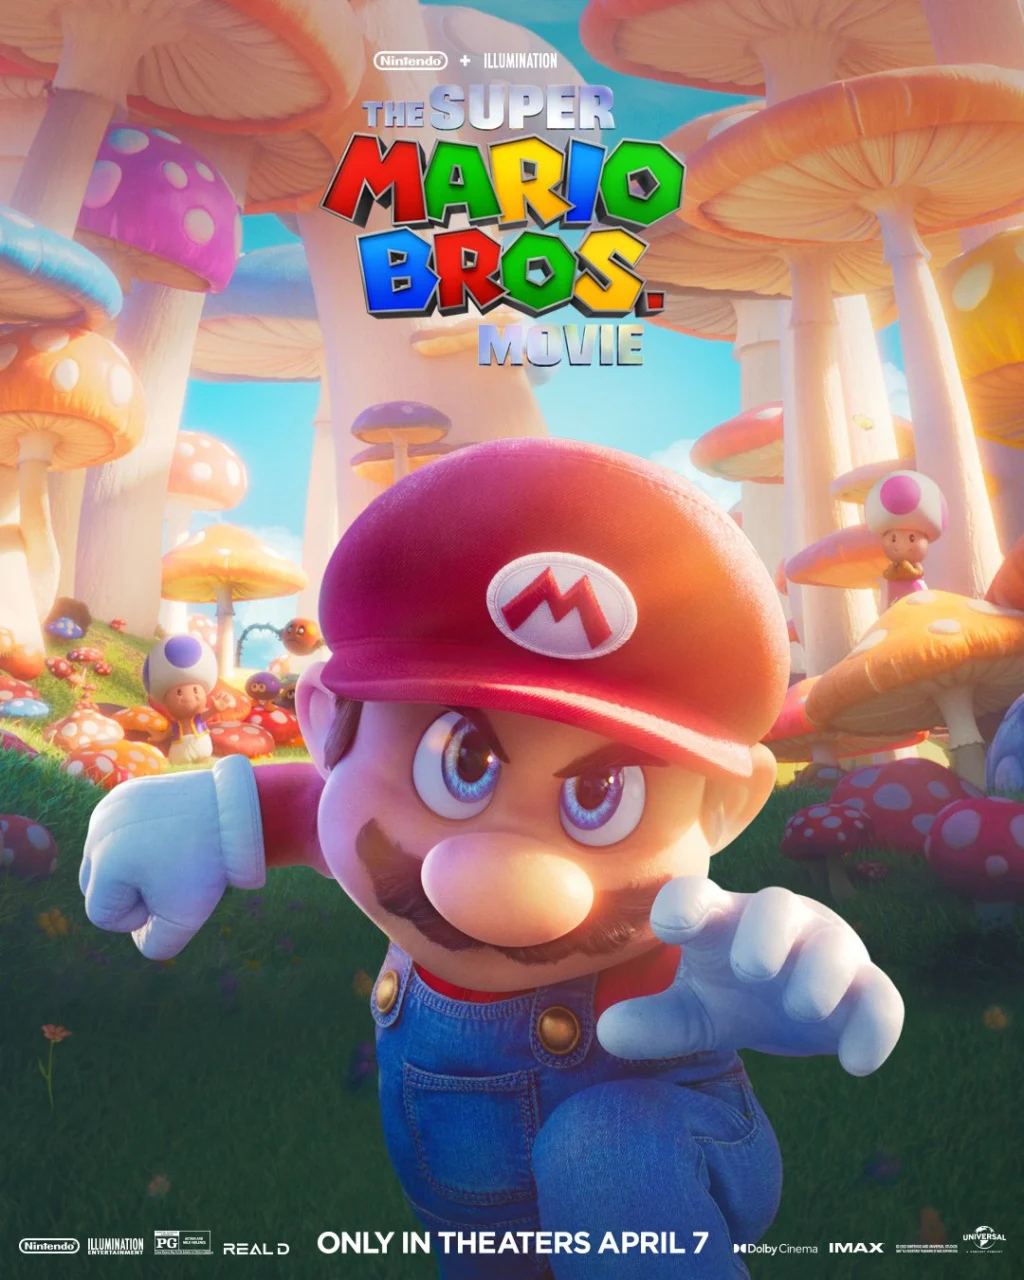 Super Mario Bros.: O Filme chega na Netflix em dezembro